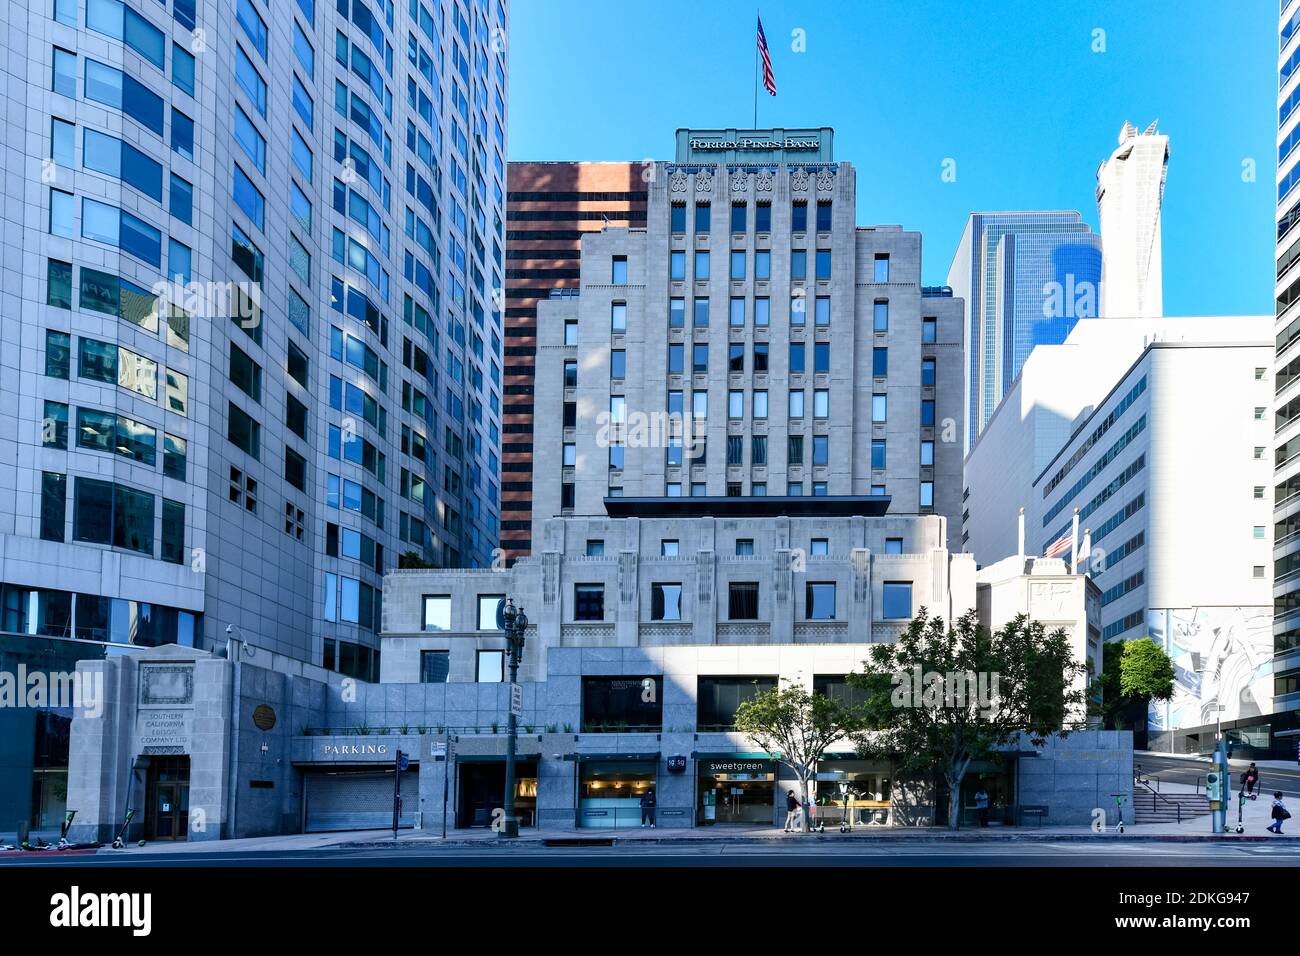 Los Angeles, Kalifornien USA - 26. August 2020: Das CalEdison Gebäude, ehemals One Bunker Hill, wurde 1931 für die Southern California Edison Comp Stockfoto